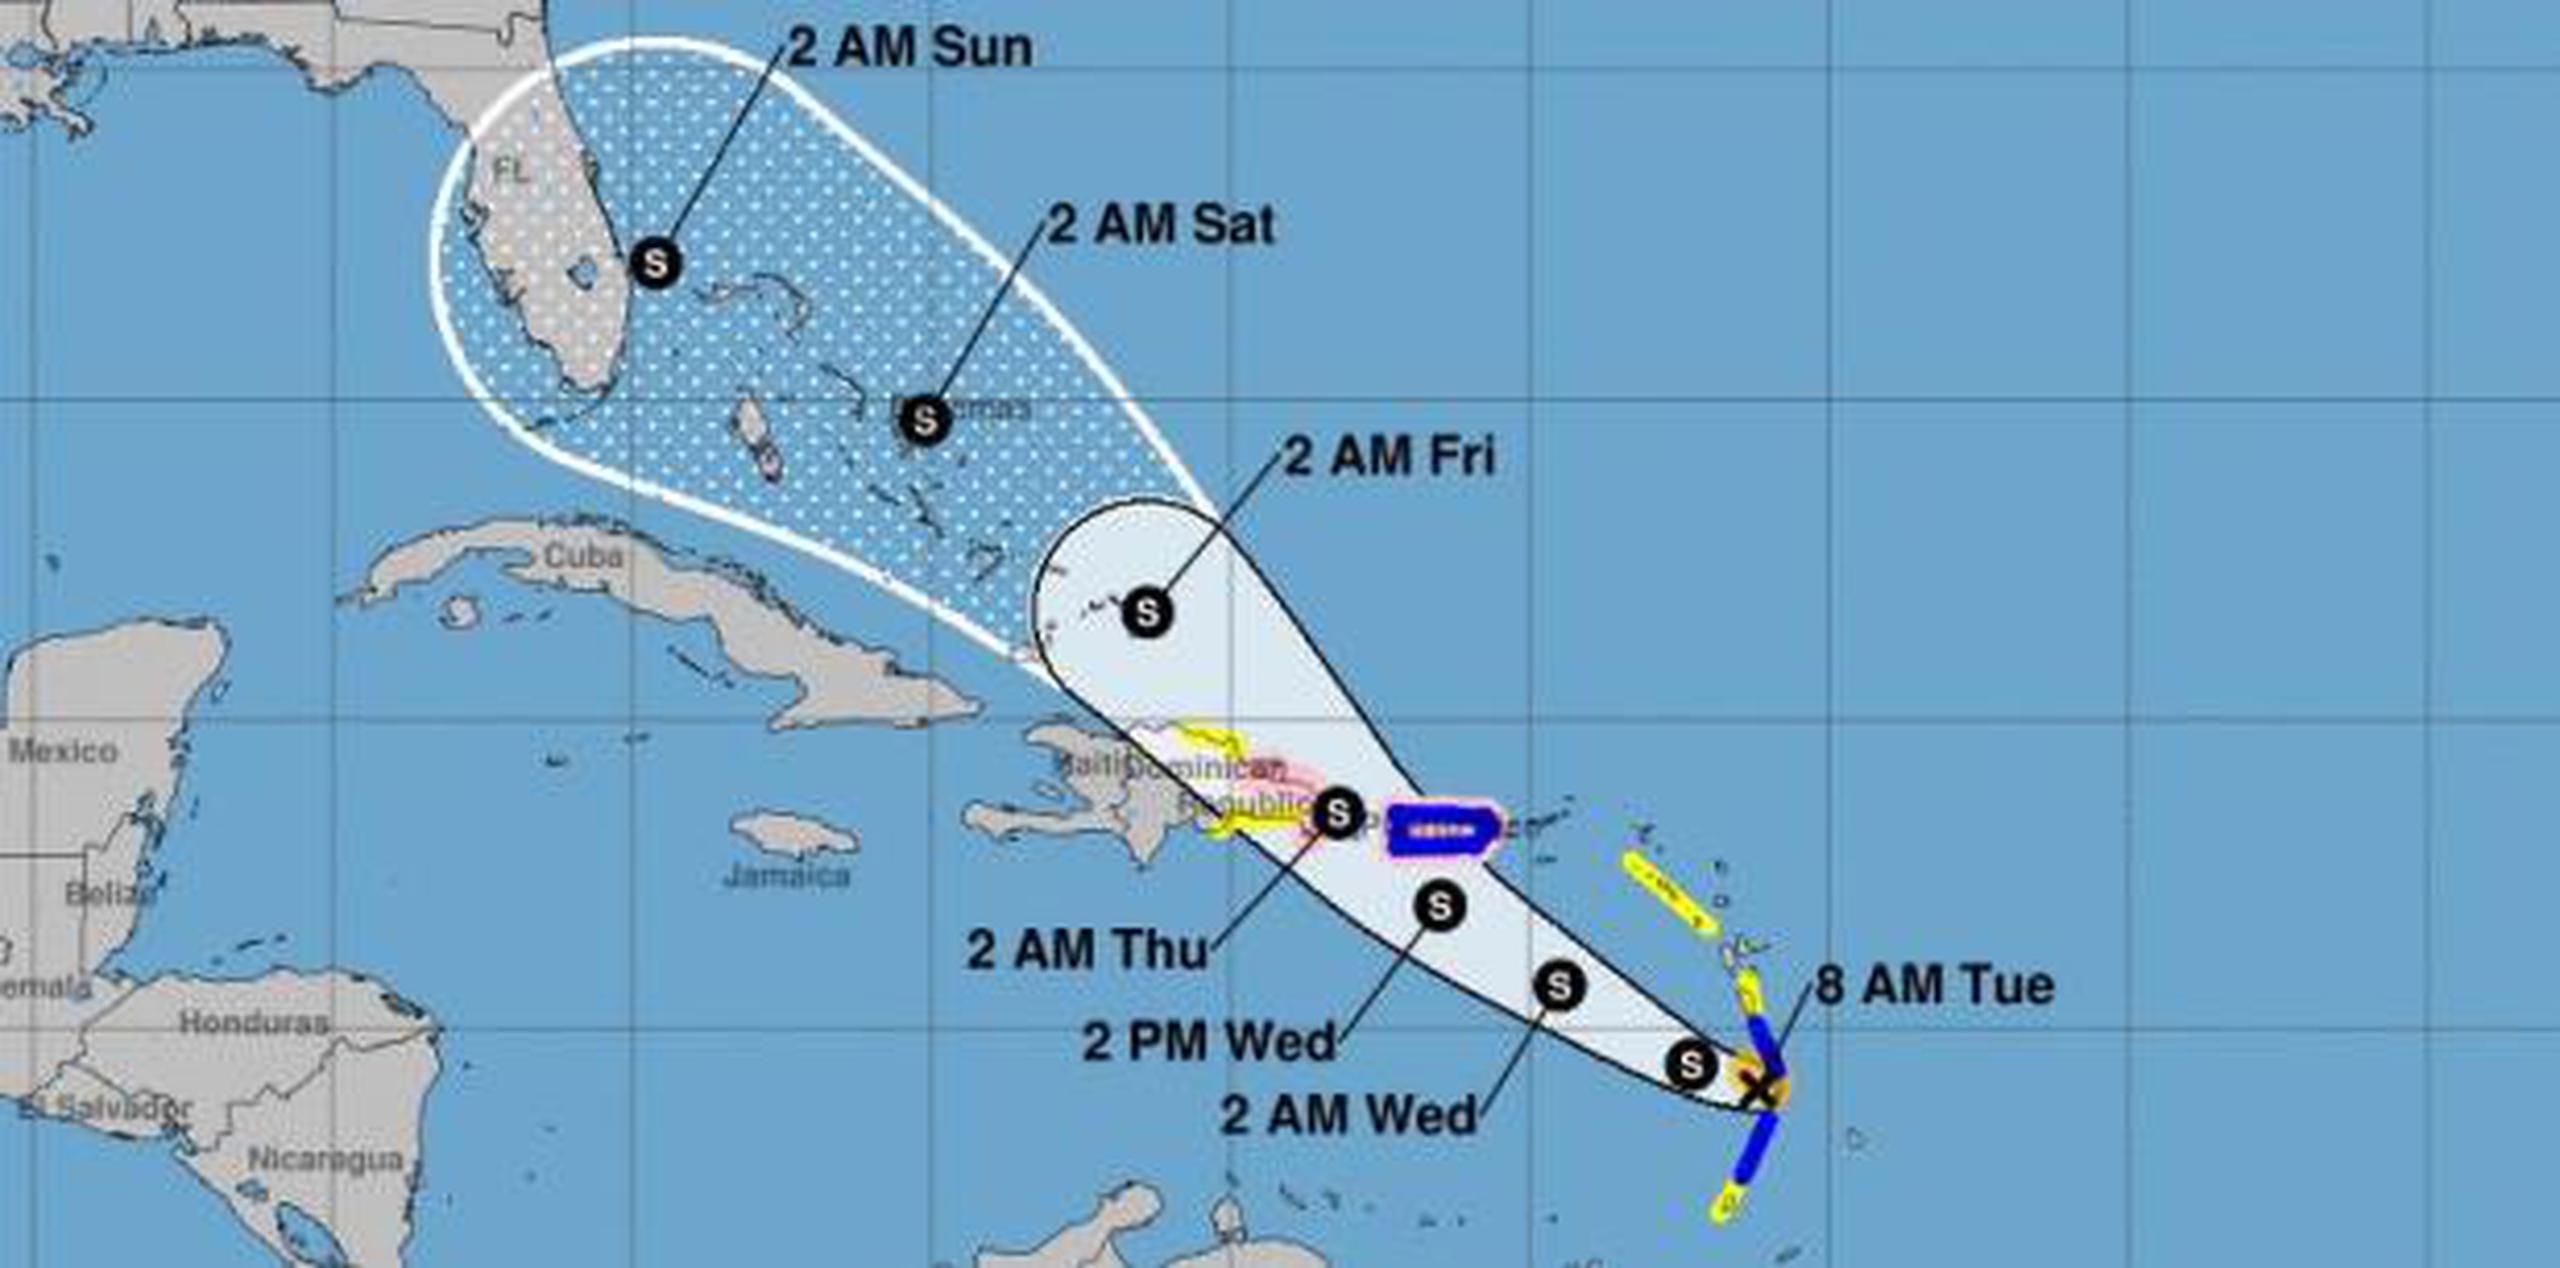 El pronóstico más reciente ubica a Dorian al sur de la isla mañana, miércoles, a las 2:00 de la tarde. (Centro Nacional de Huracanes)